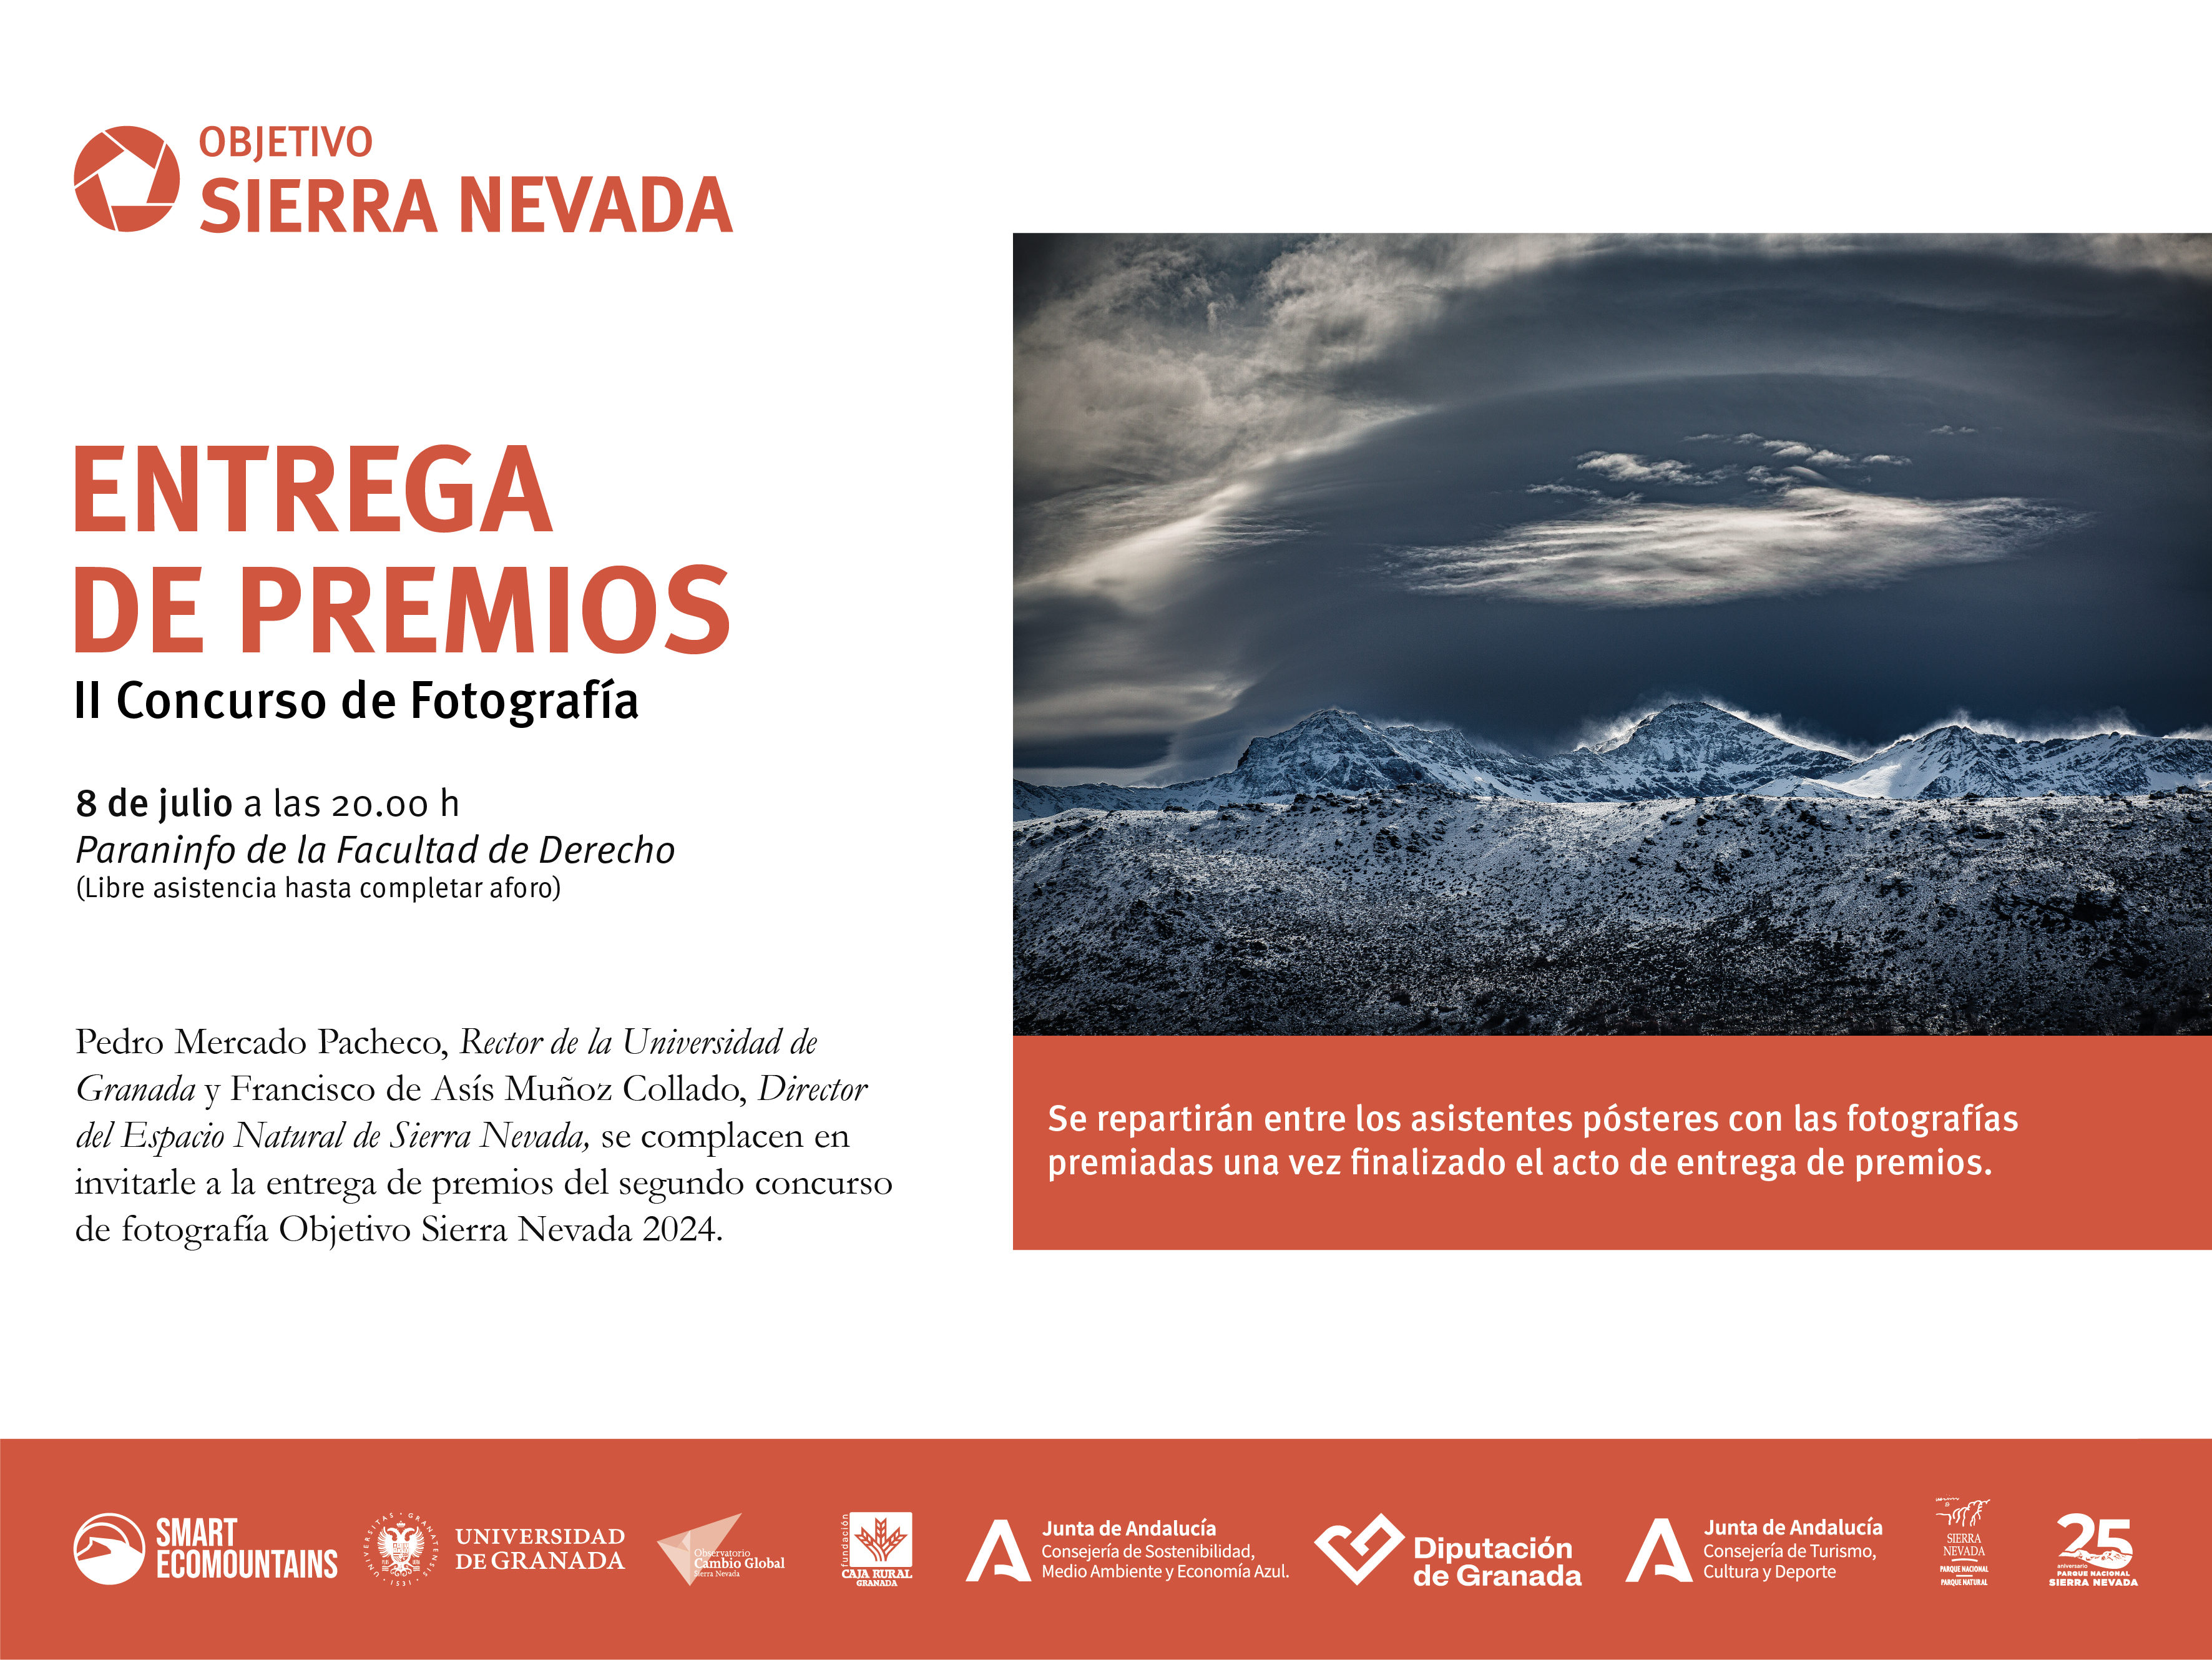 Invitación acto de entrega de premios concurso Objetivo Sierra Nevada